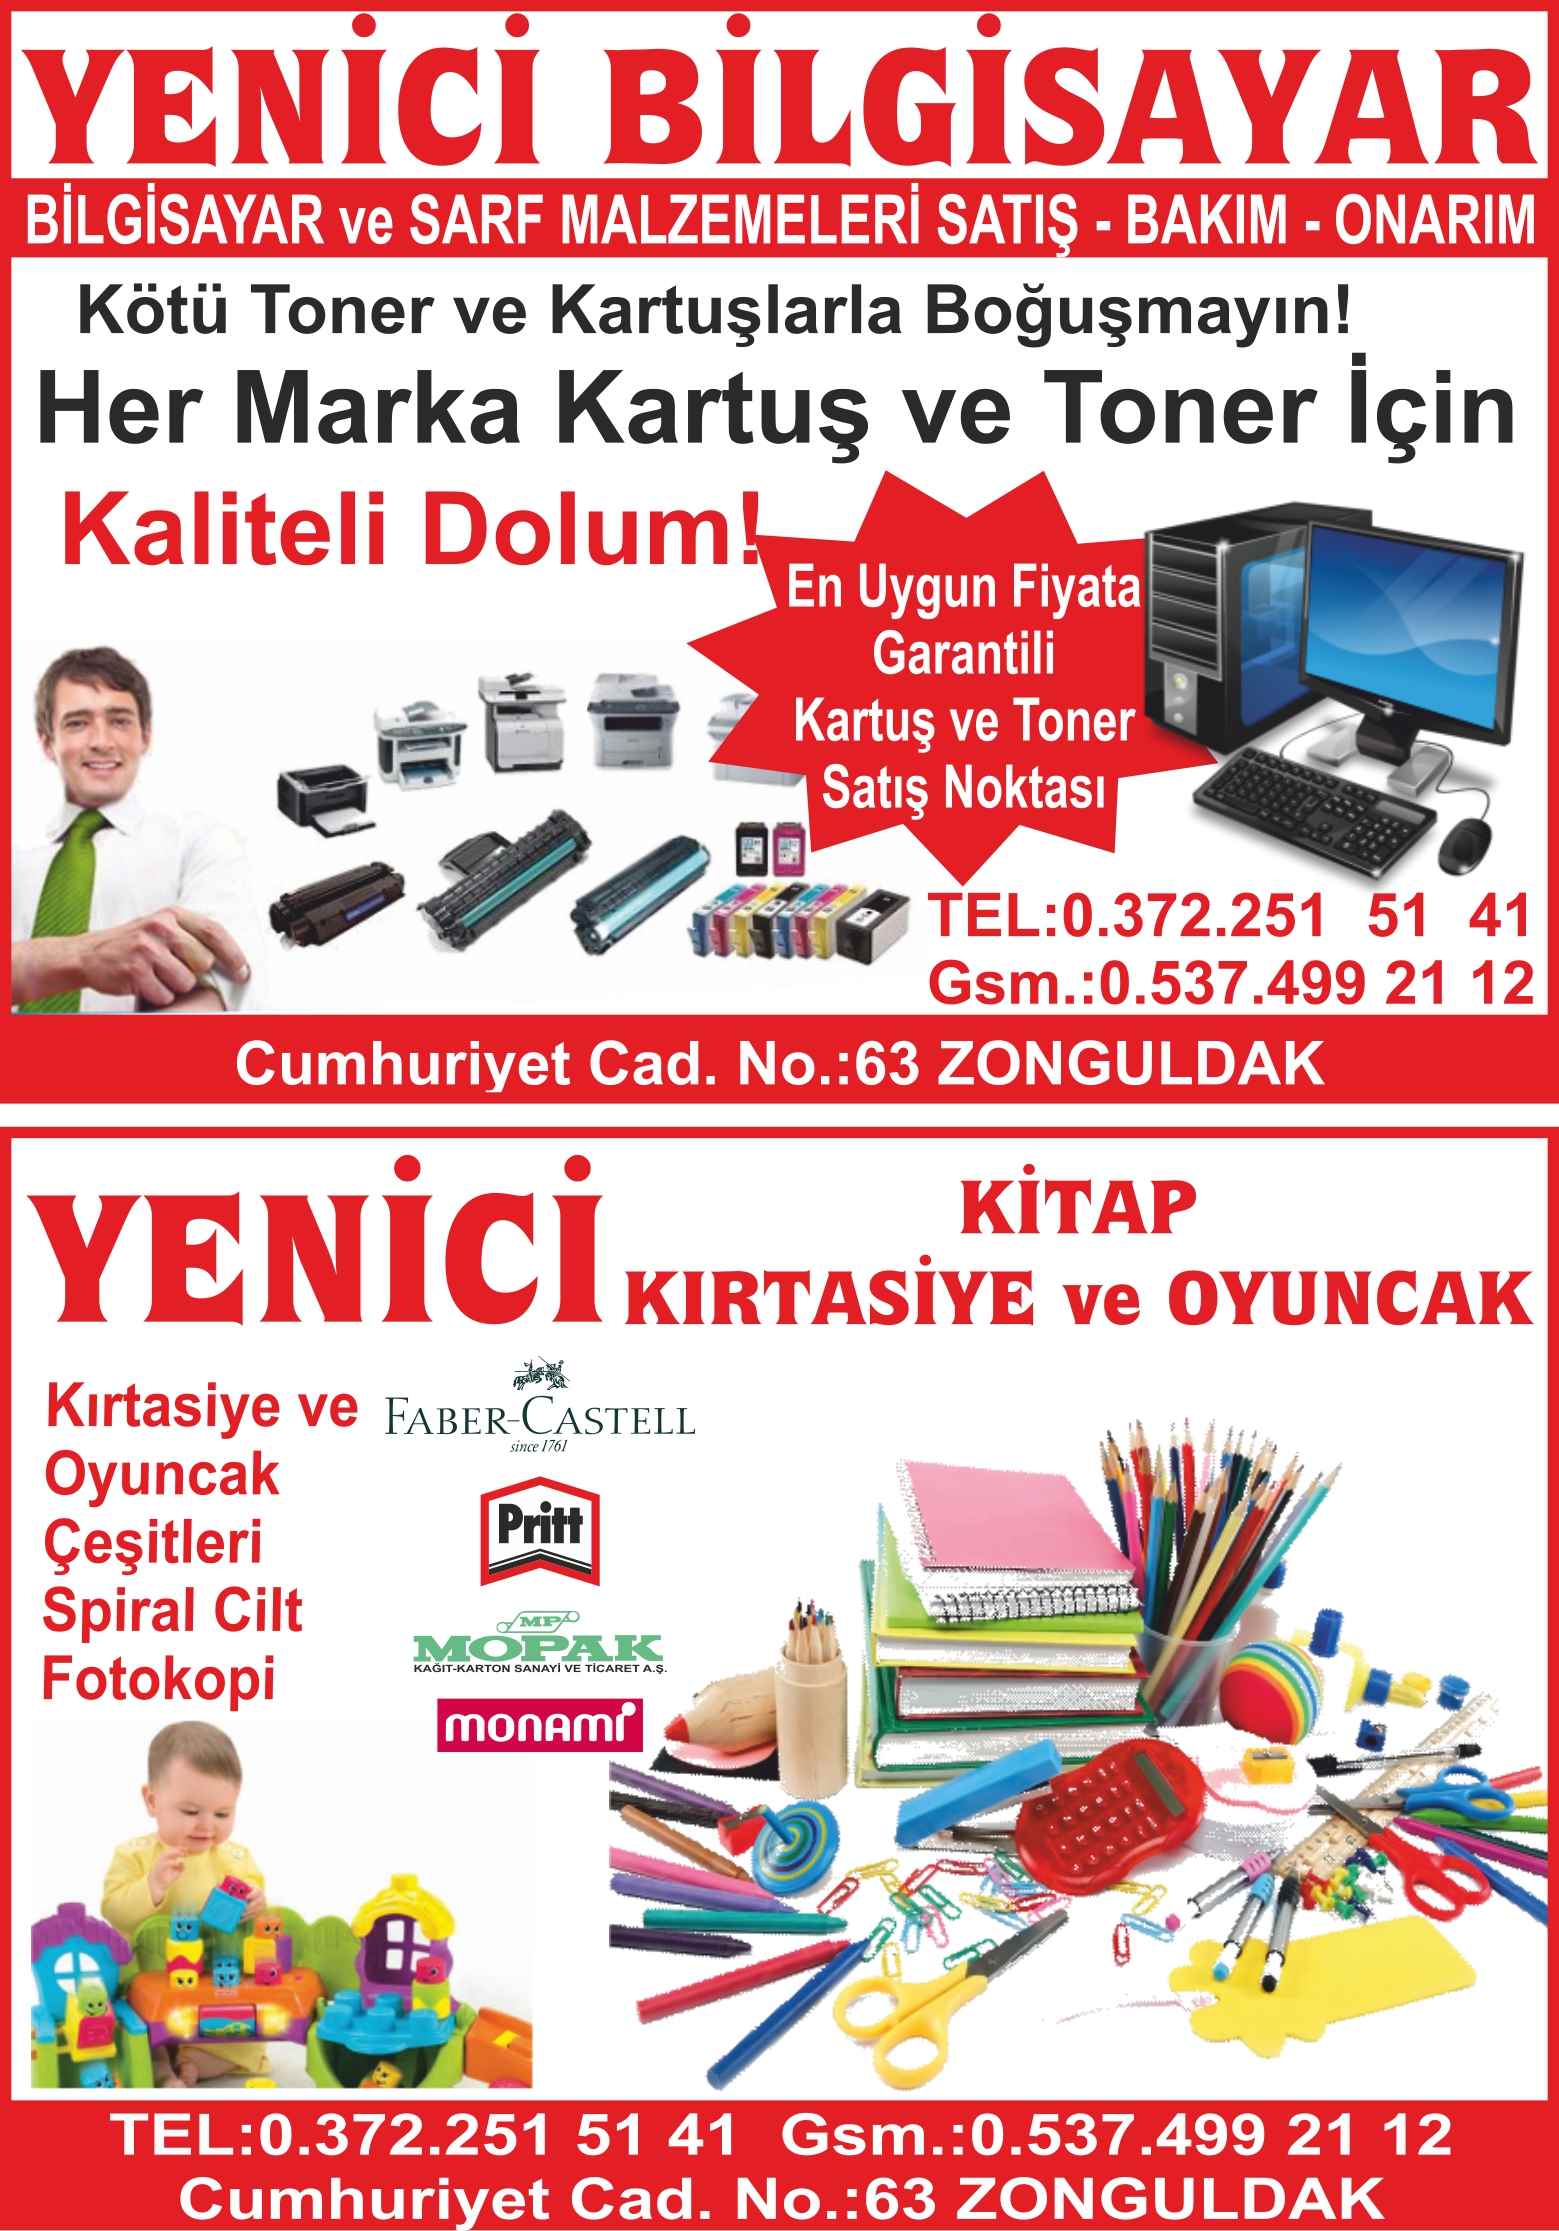 Yenici Bilgisayar Zonguldak